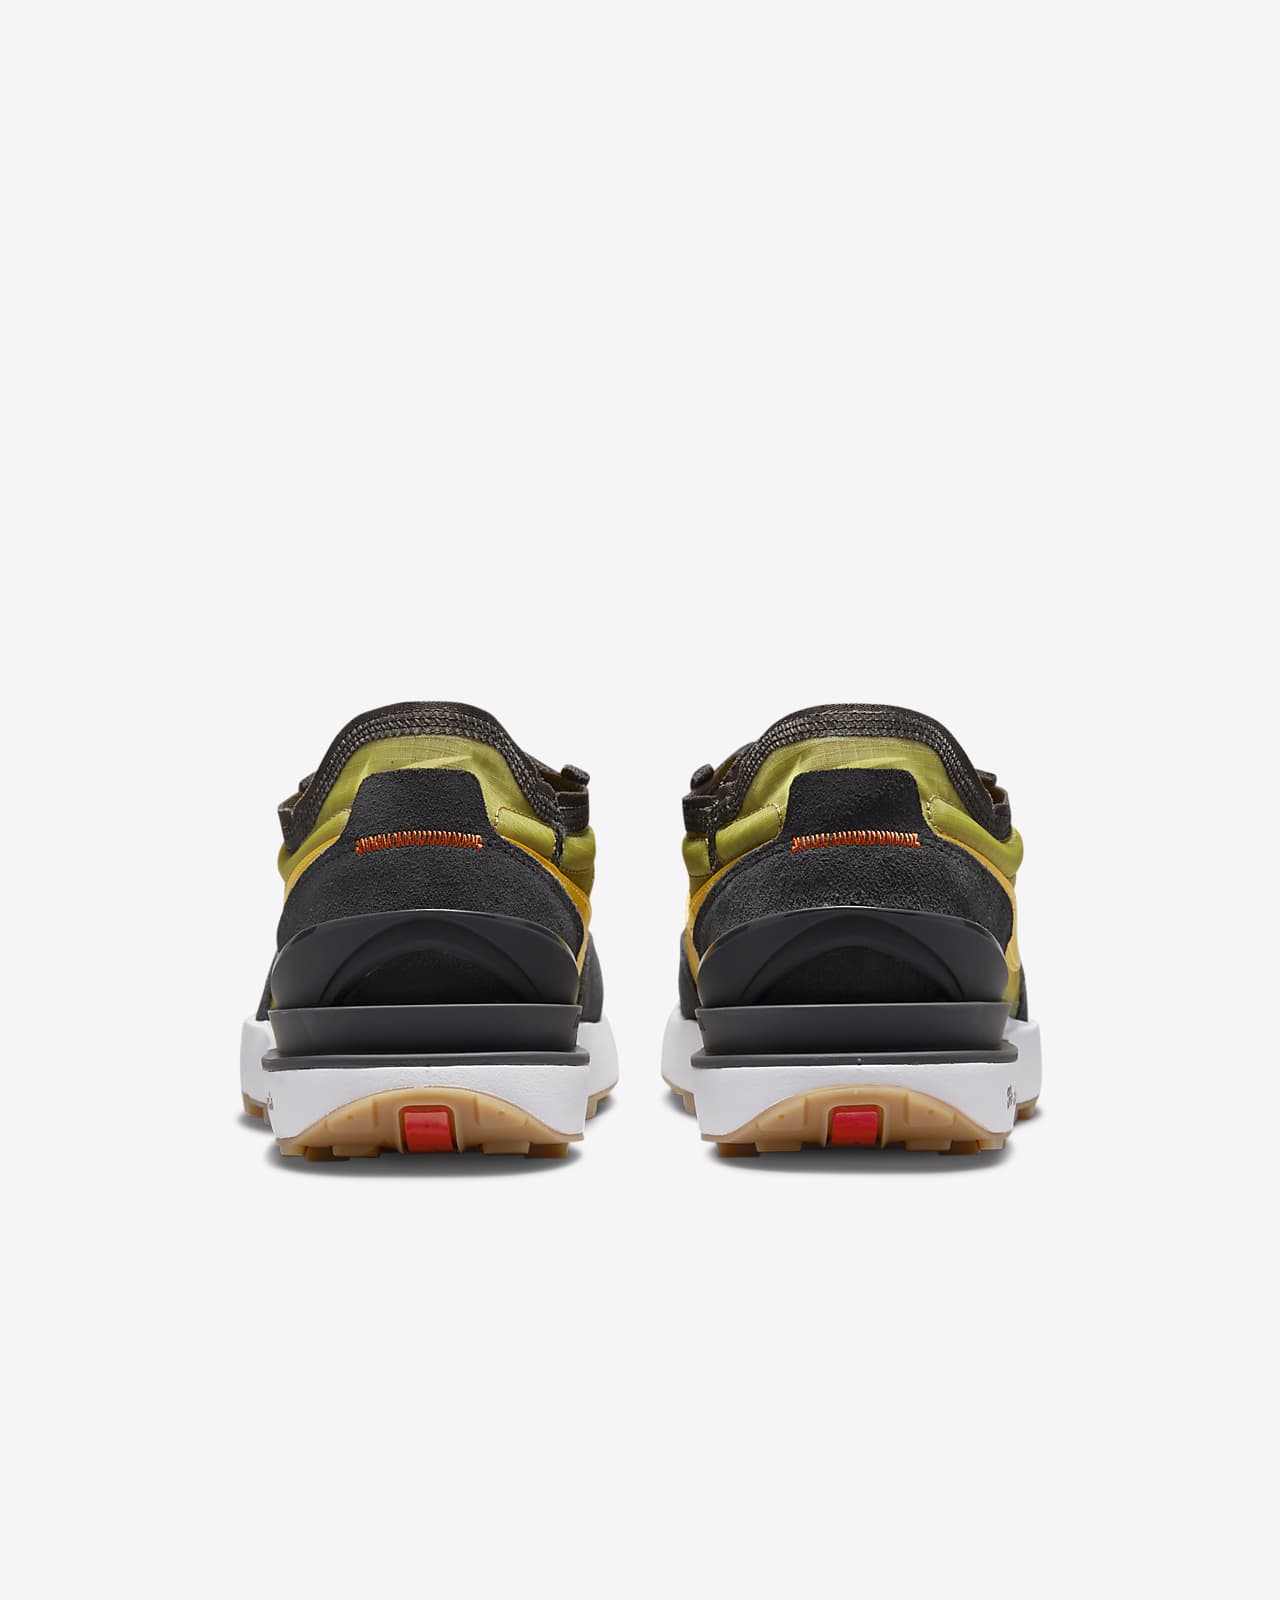 Nike Waffle One SE Men's Shoes